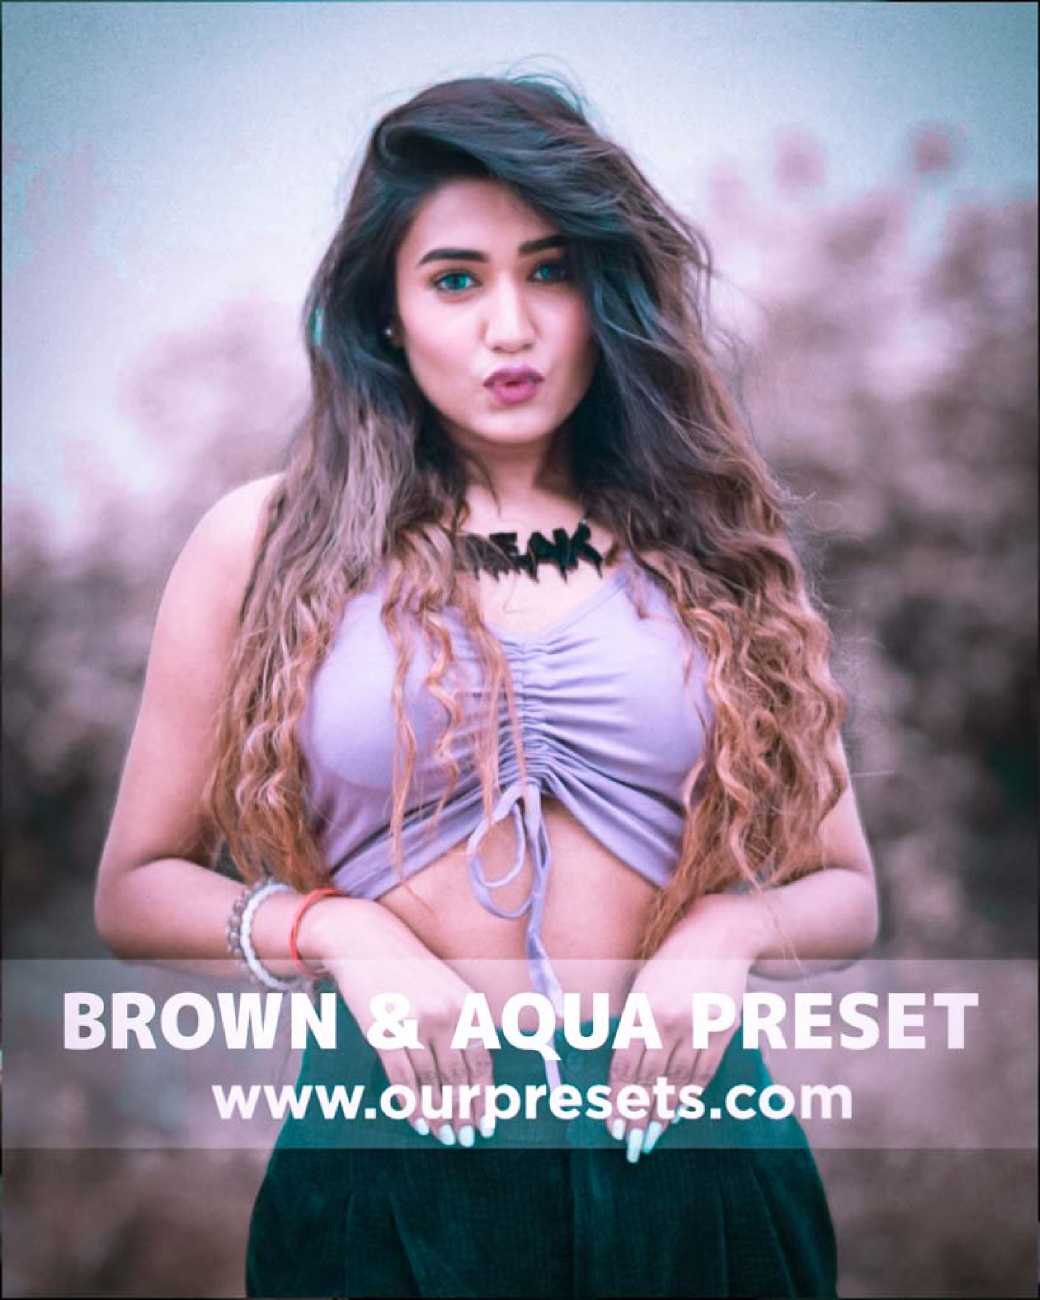 Brown & aqua preset download | Lightroom brown & aqua